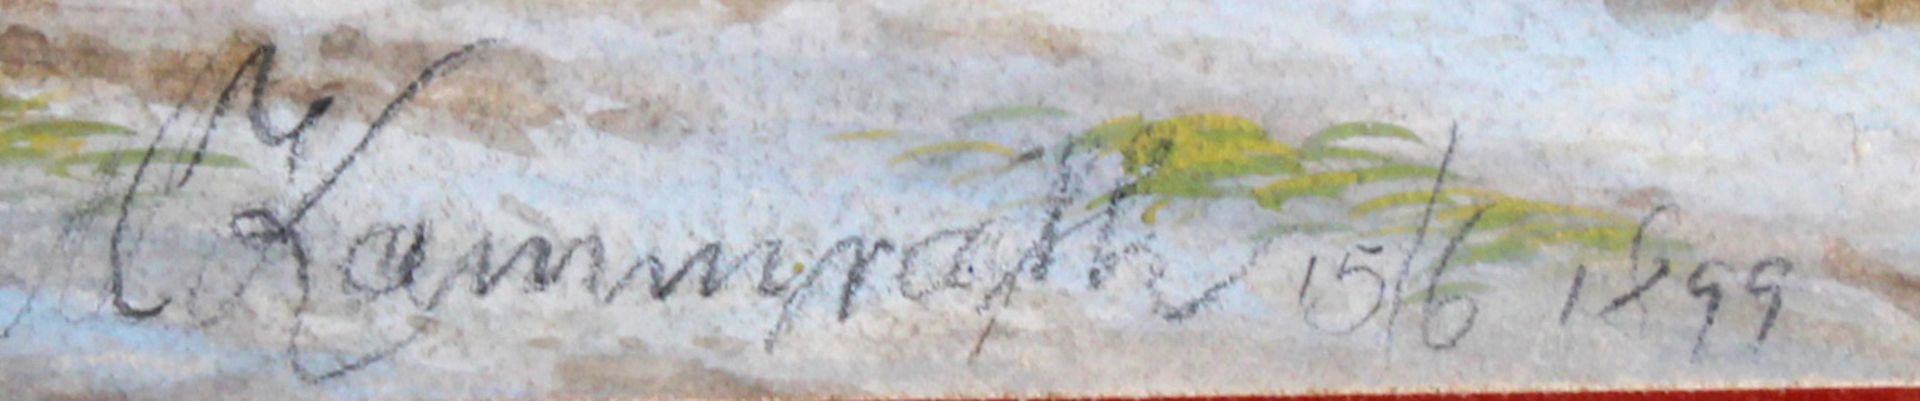 Kammrath, Anna (19./20. Jh.), wohl, "Spielende Kinder am Wasserfall", Gouache, signiert und datiert - Bild 3 aus 3